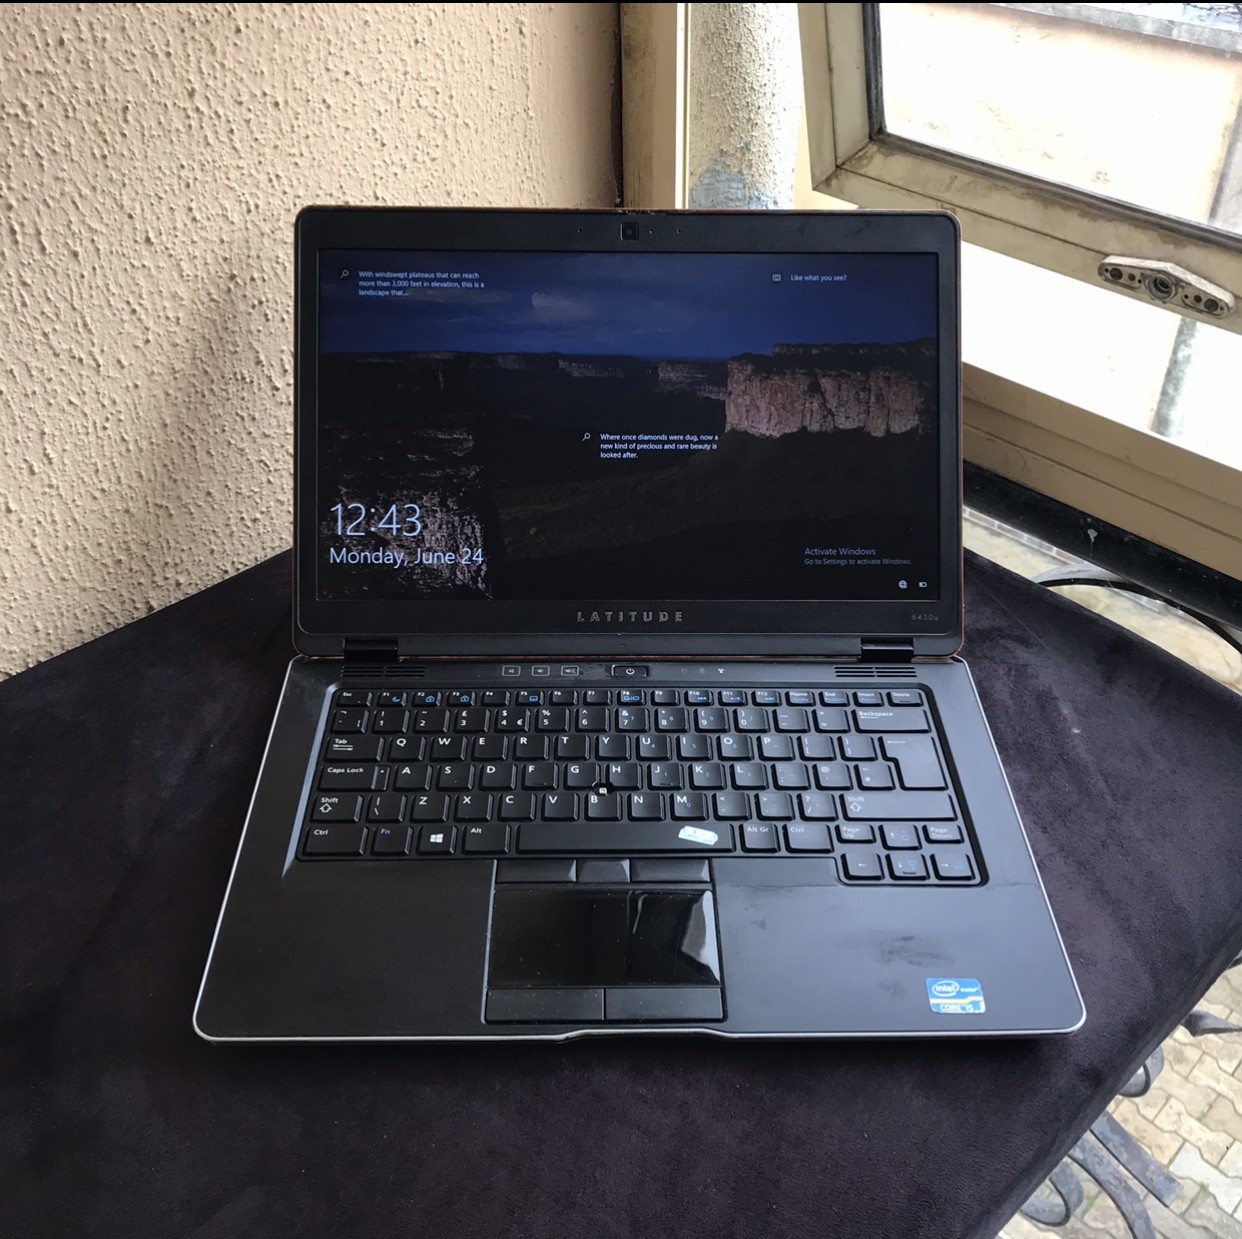 [K4]-8Gb Ram, 256Gb Ssd, Corei5, Keyboard Light, Dell Latitude 6430U Laptop For-Sale